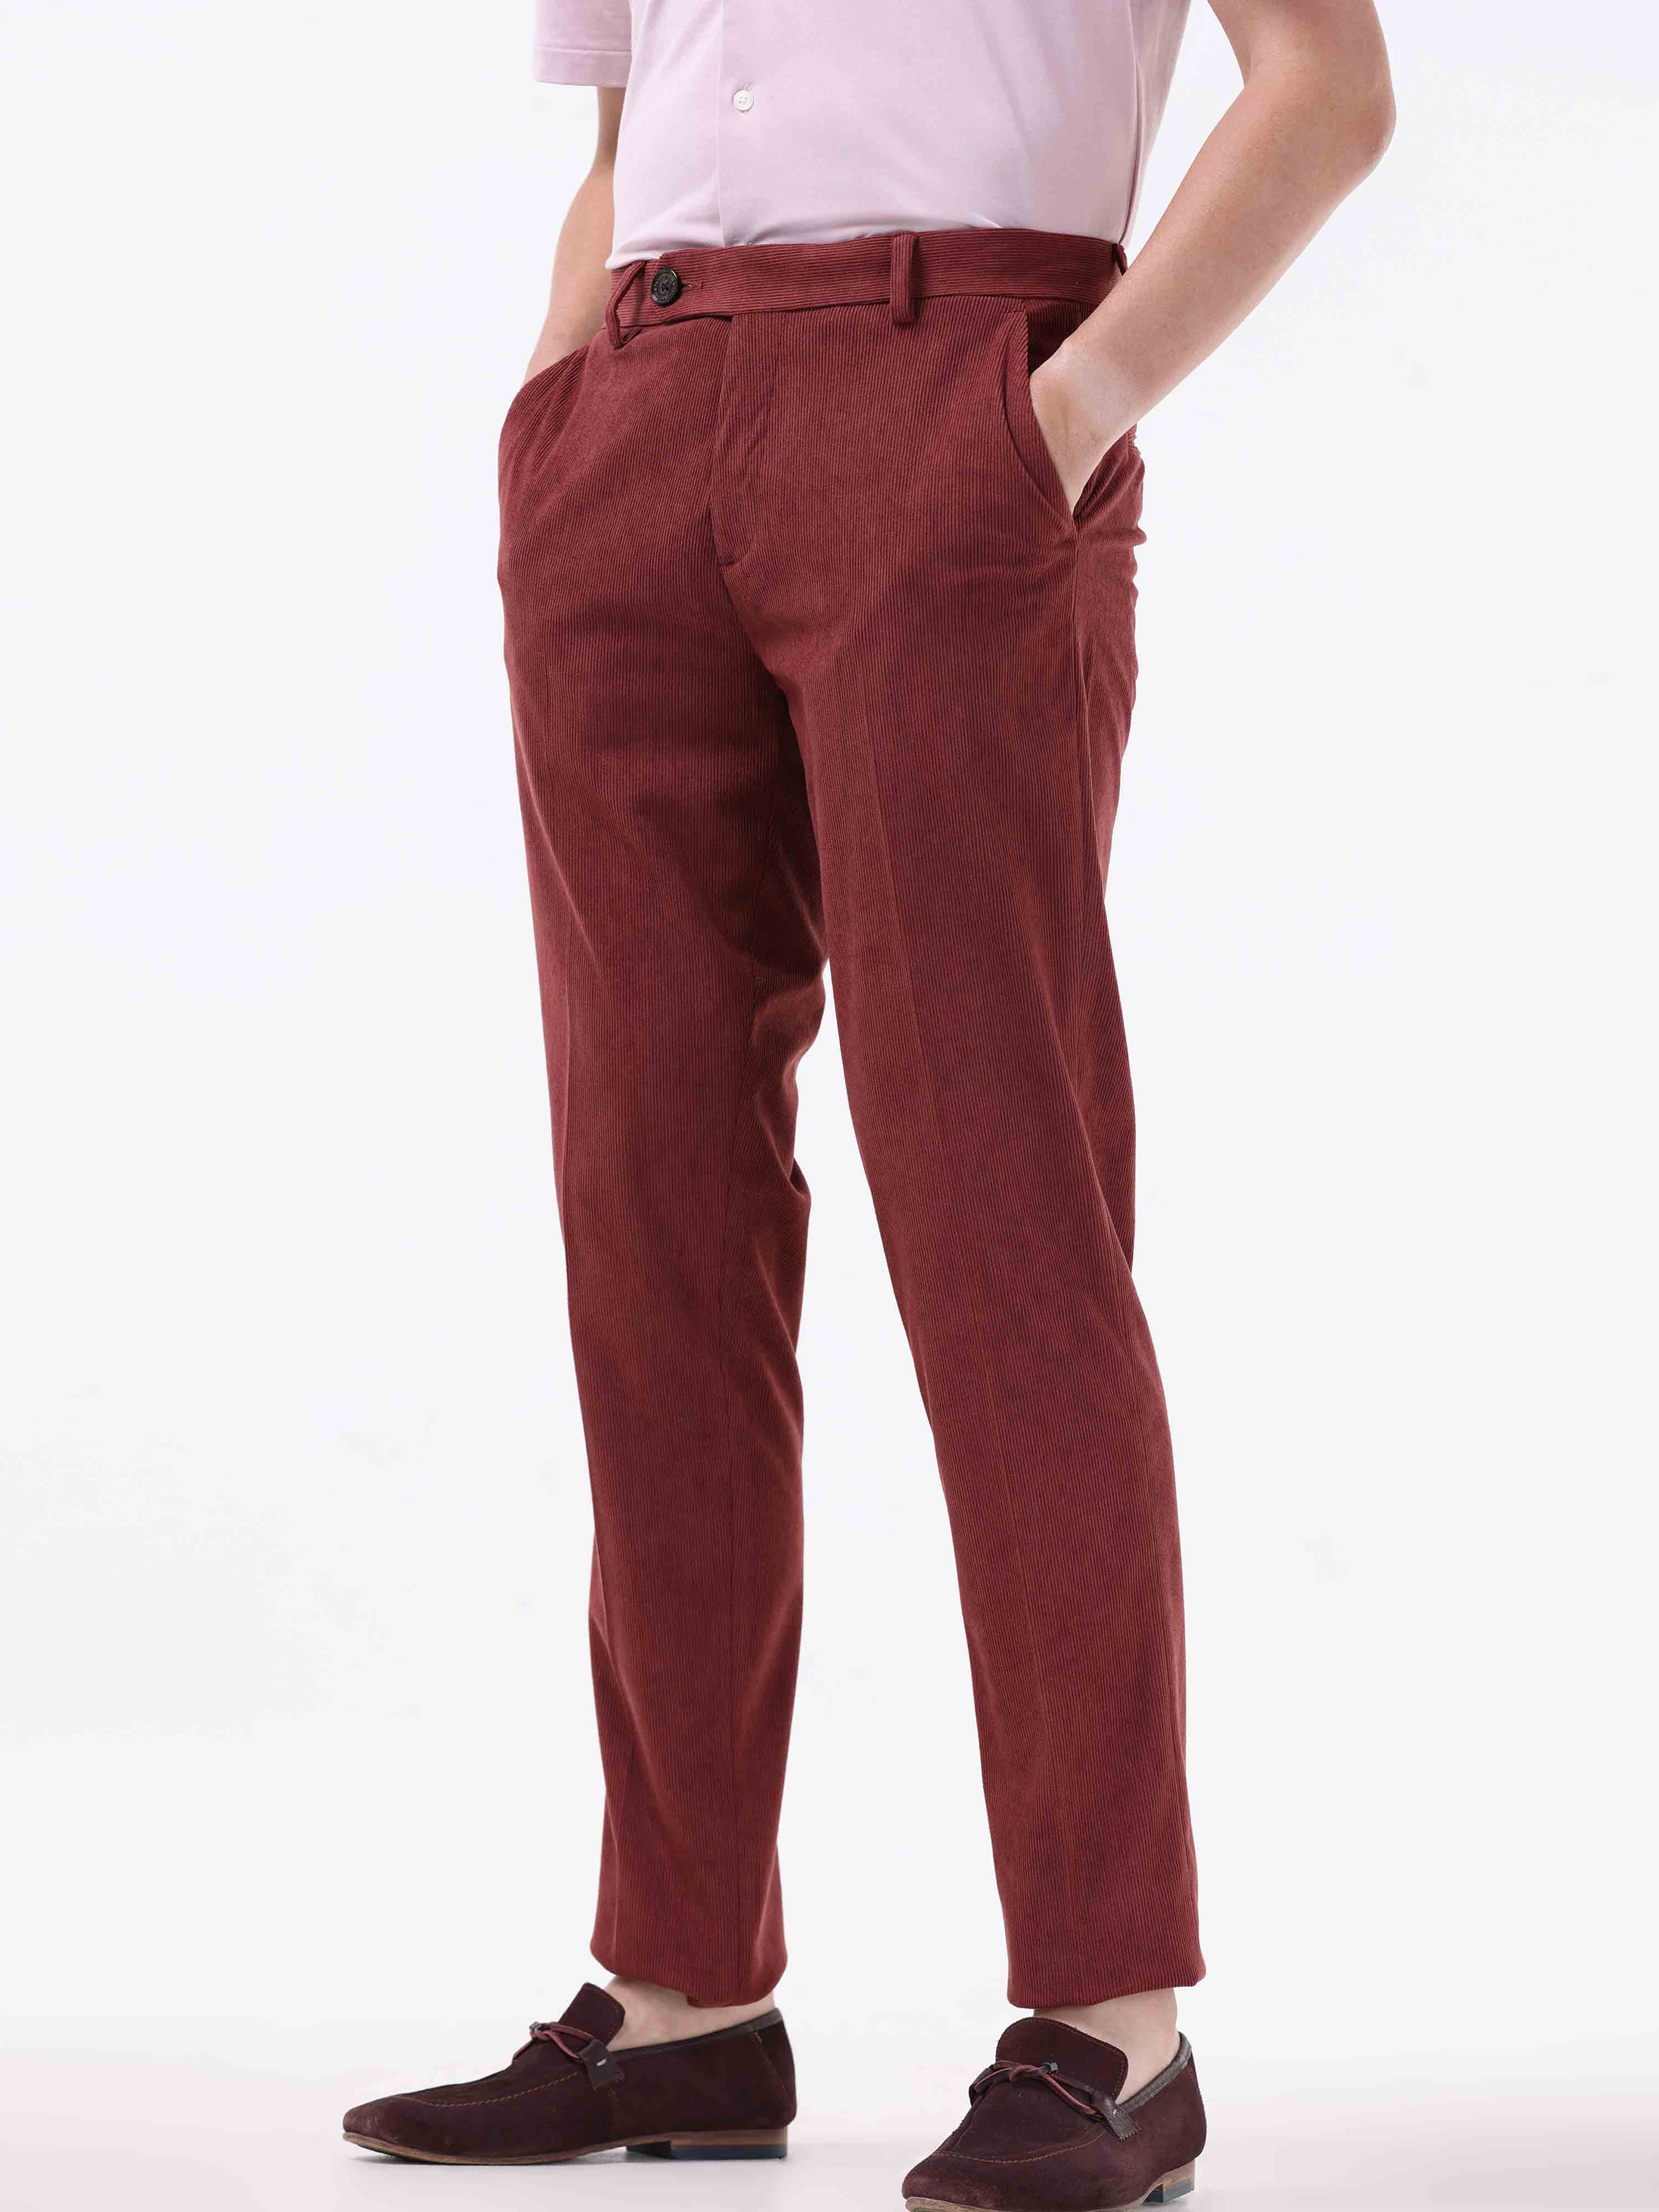 Mens Corduroy Pants - Shop Cotton Trousers Men Online